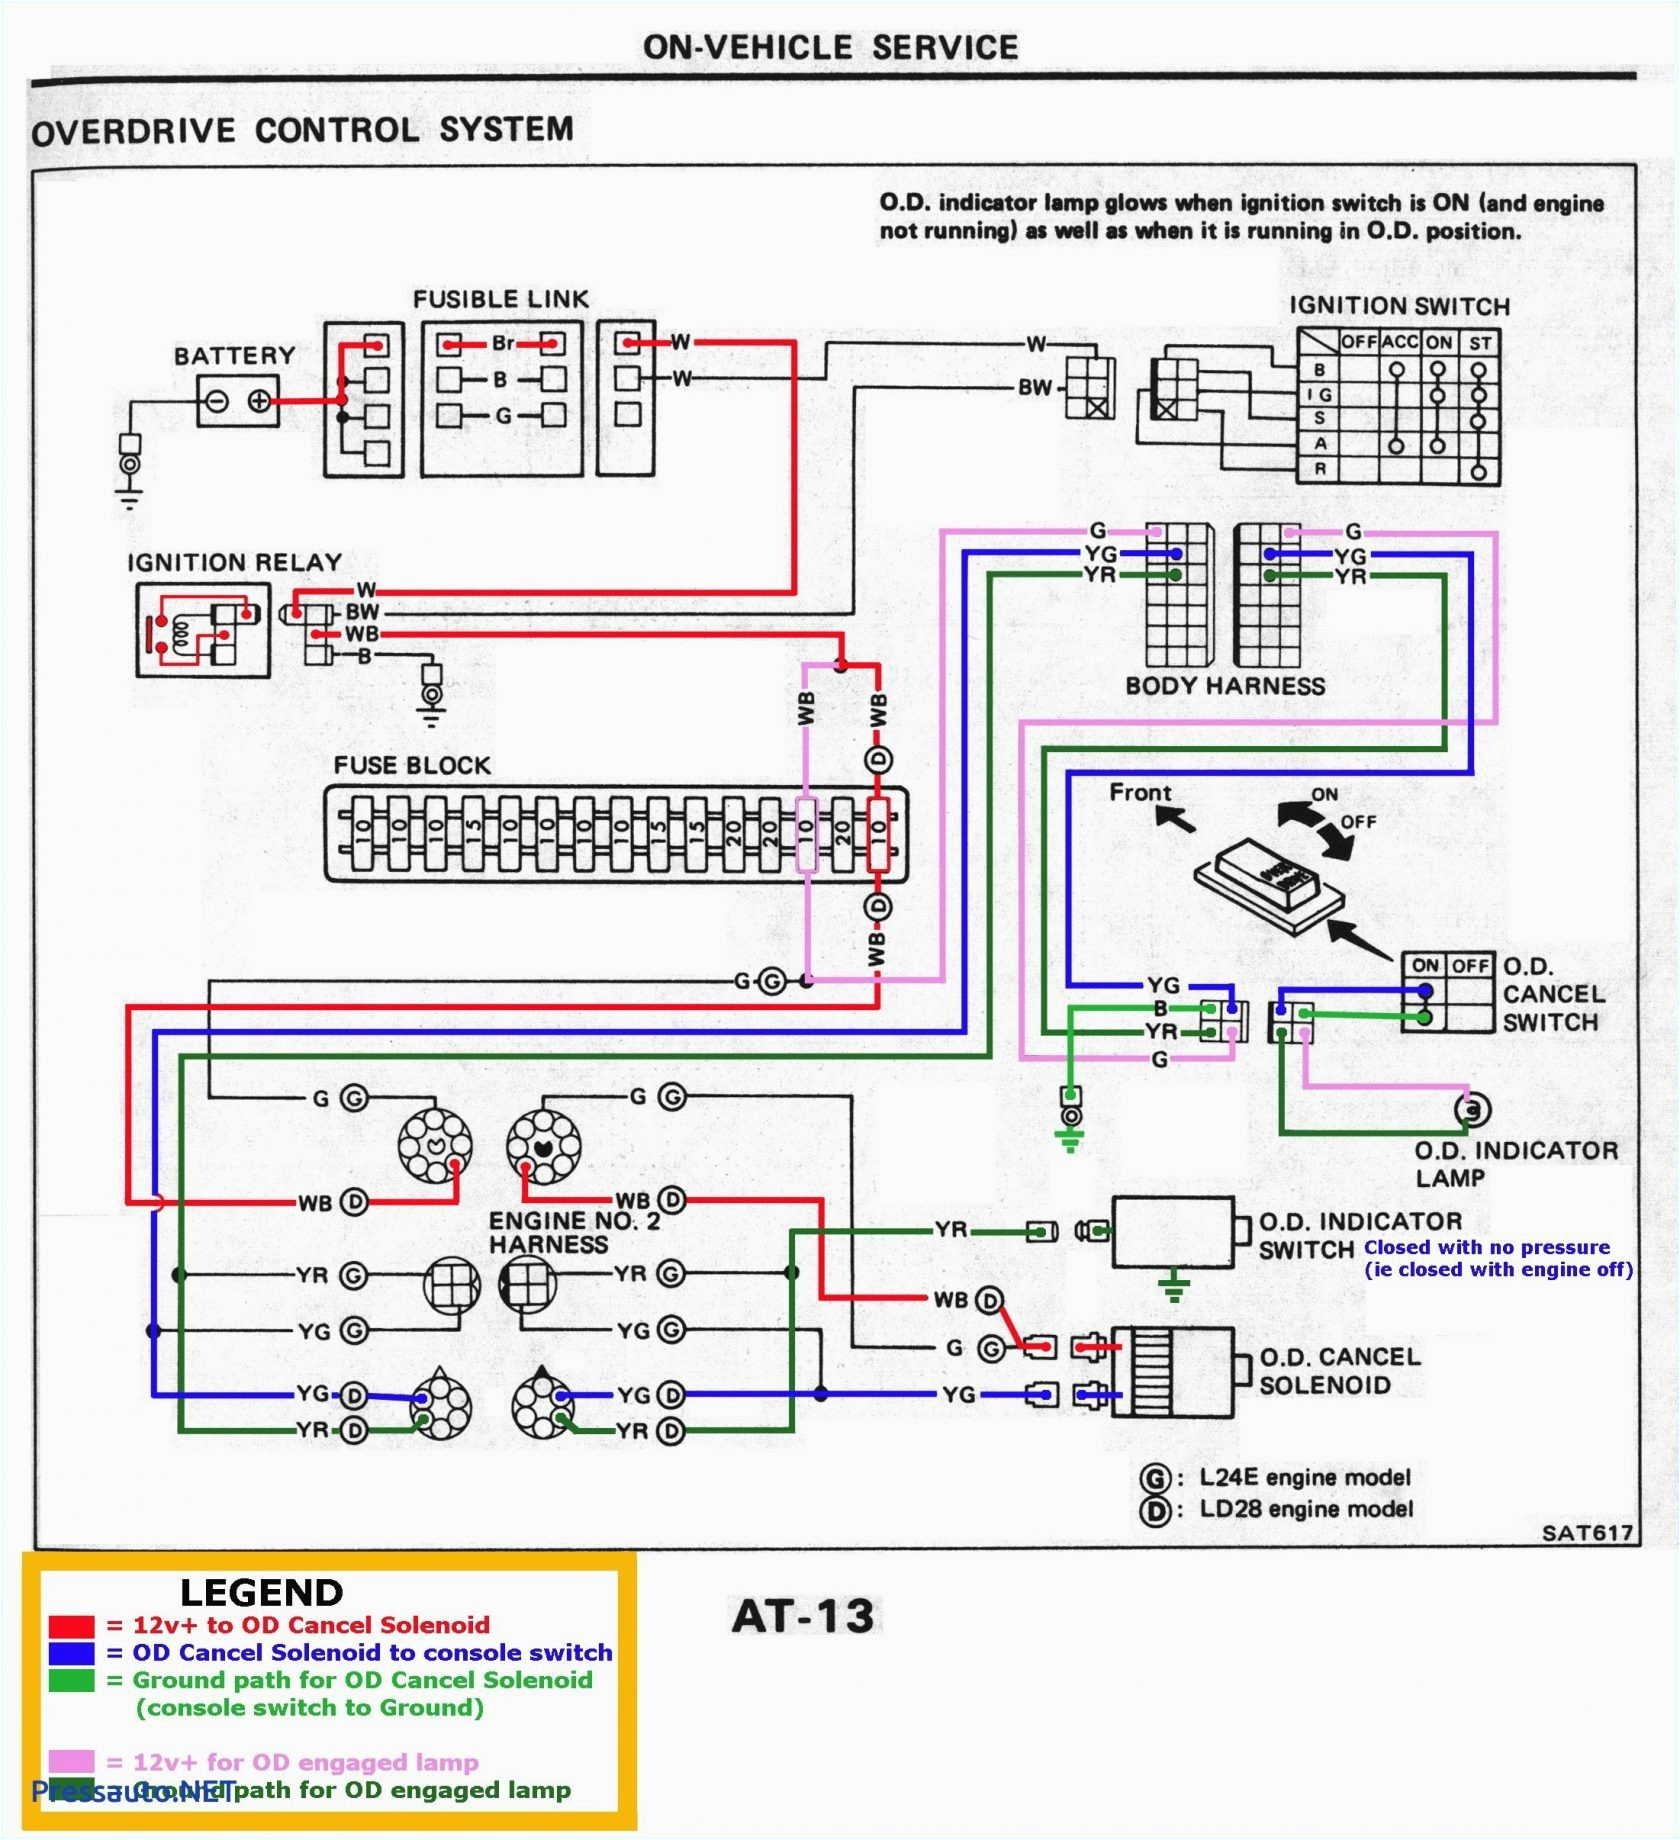 gps wiring diagram electrical wiring diagrampto wiring diagram gps trackers wiring diagram centregps wiring diagram wiring